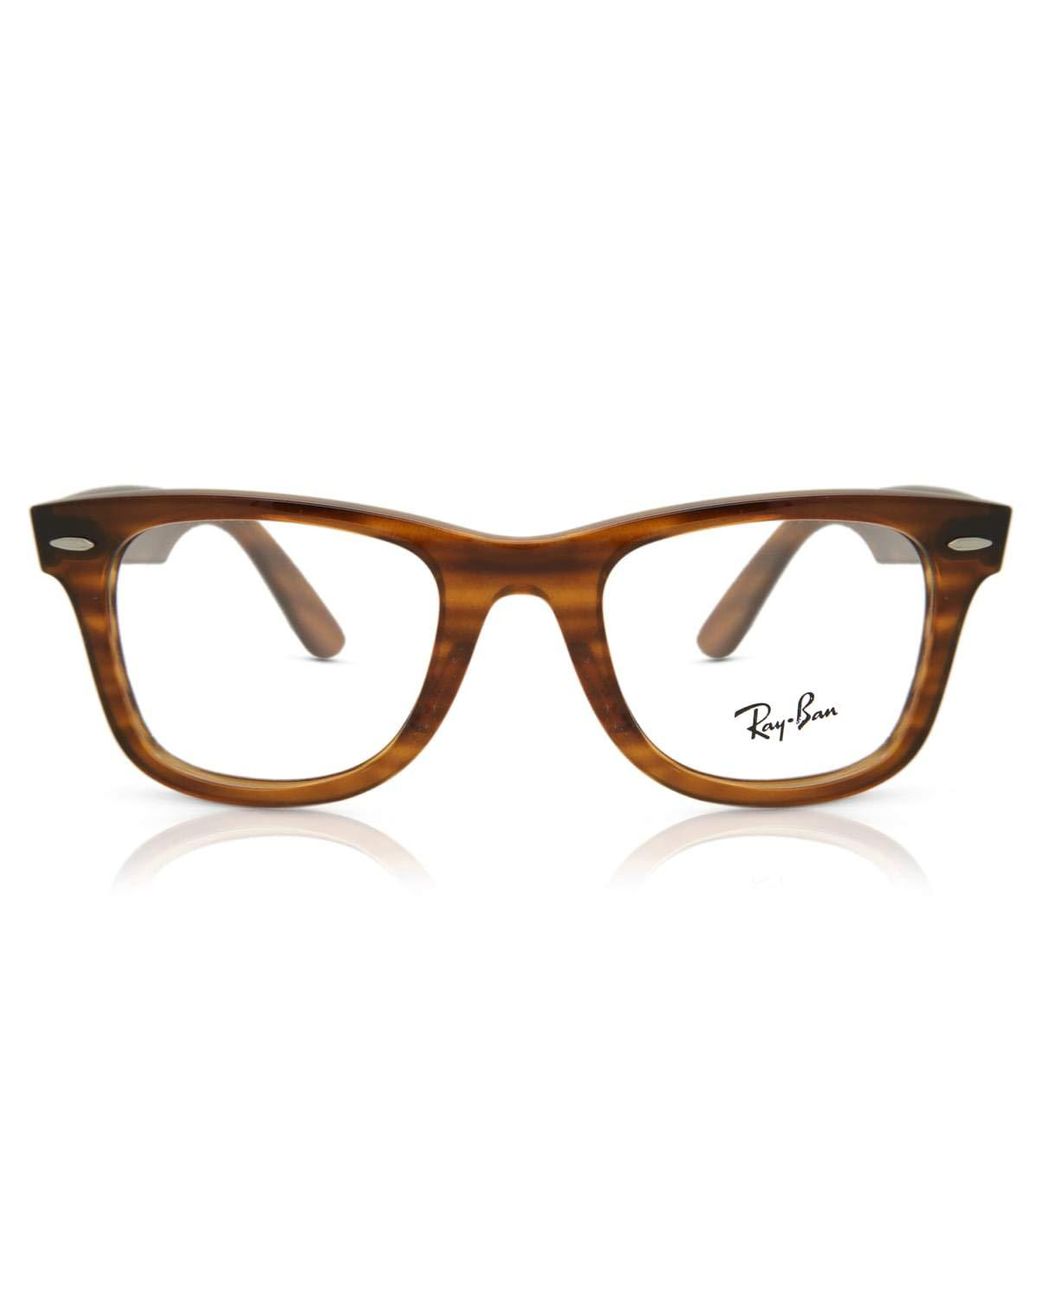 Ray-Ban Rx4340v Wayfarer Prescription Eyeglass Frames in Brown - Lyst